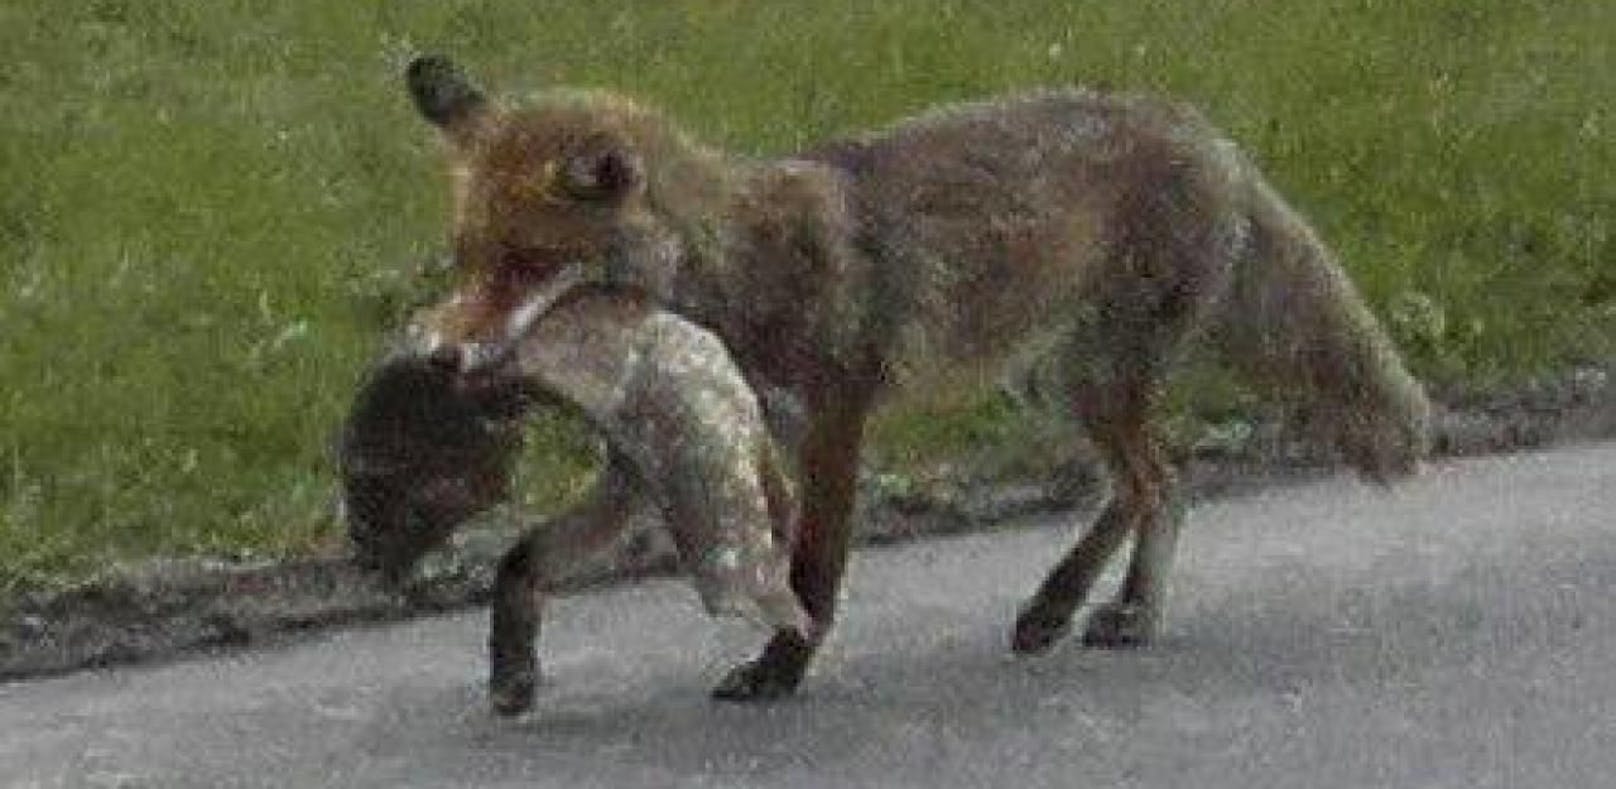 Fuchs du hast den Karpfen gestohlen